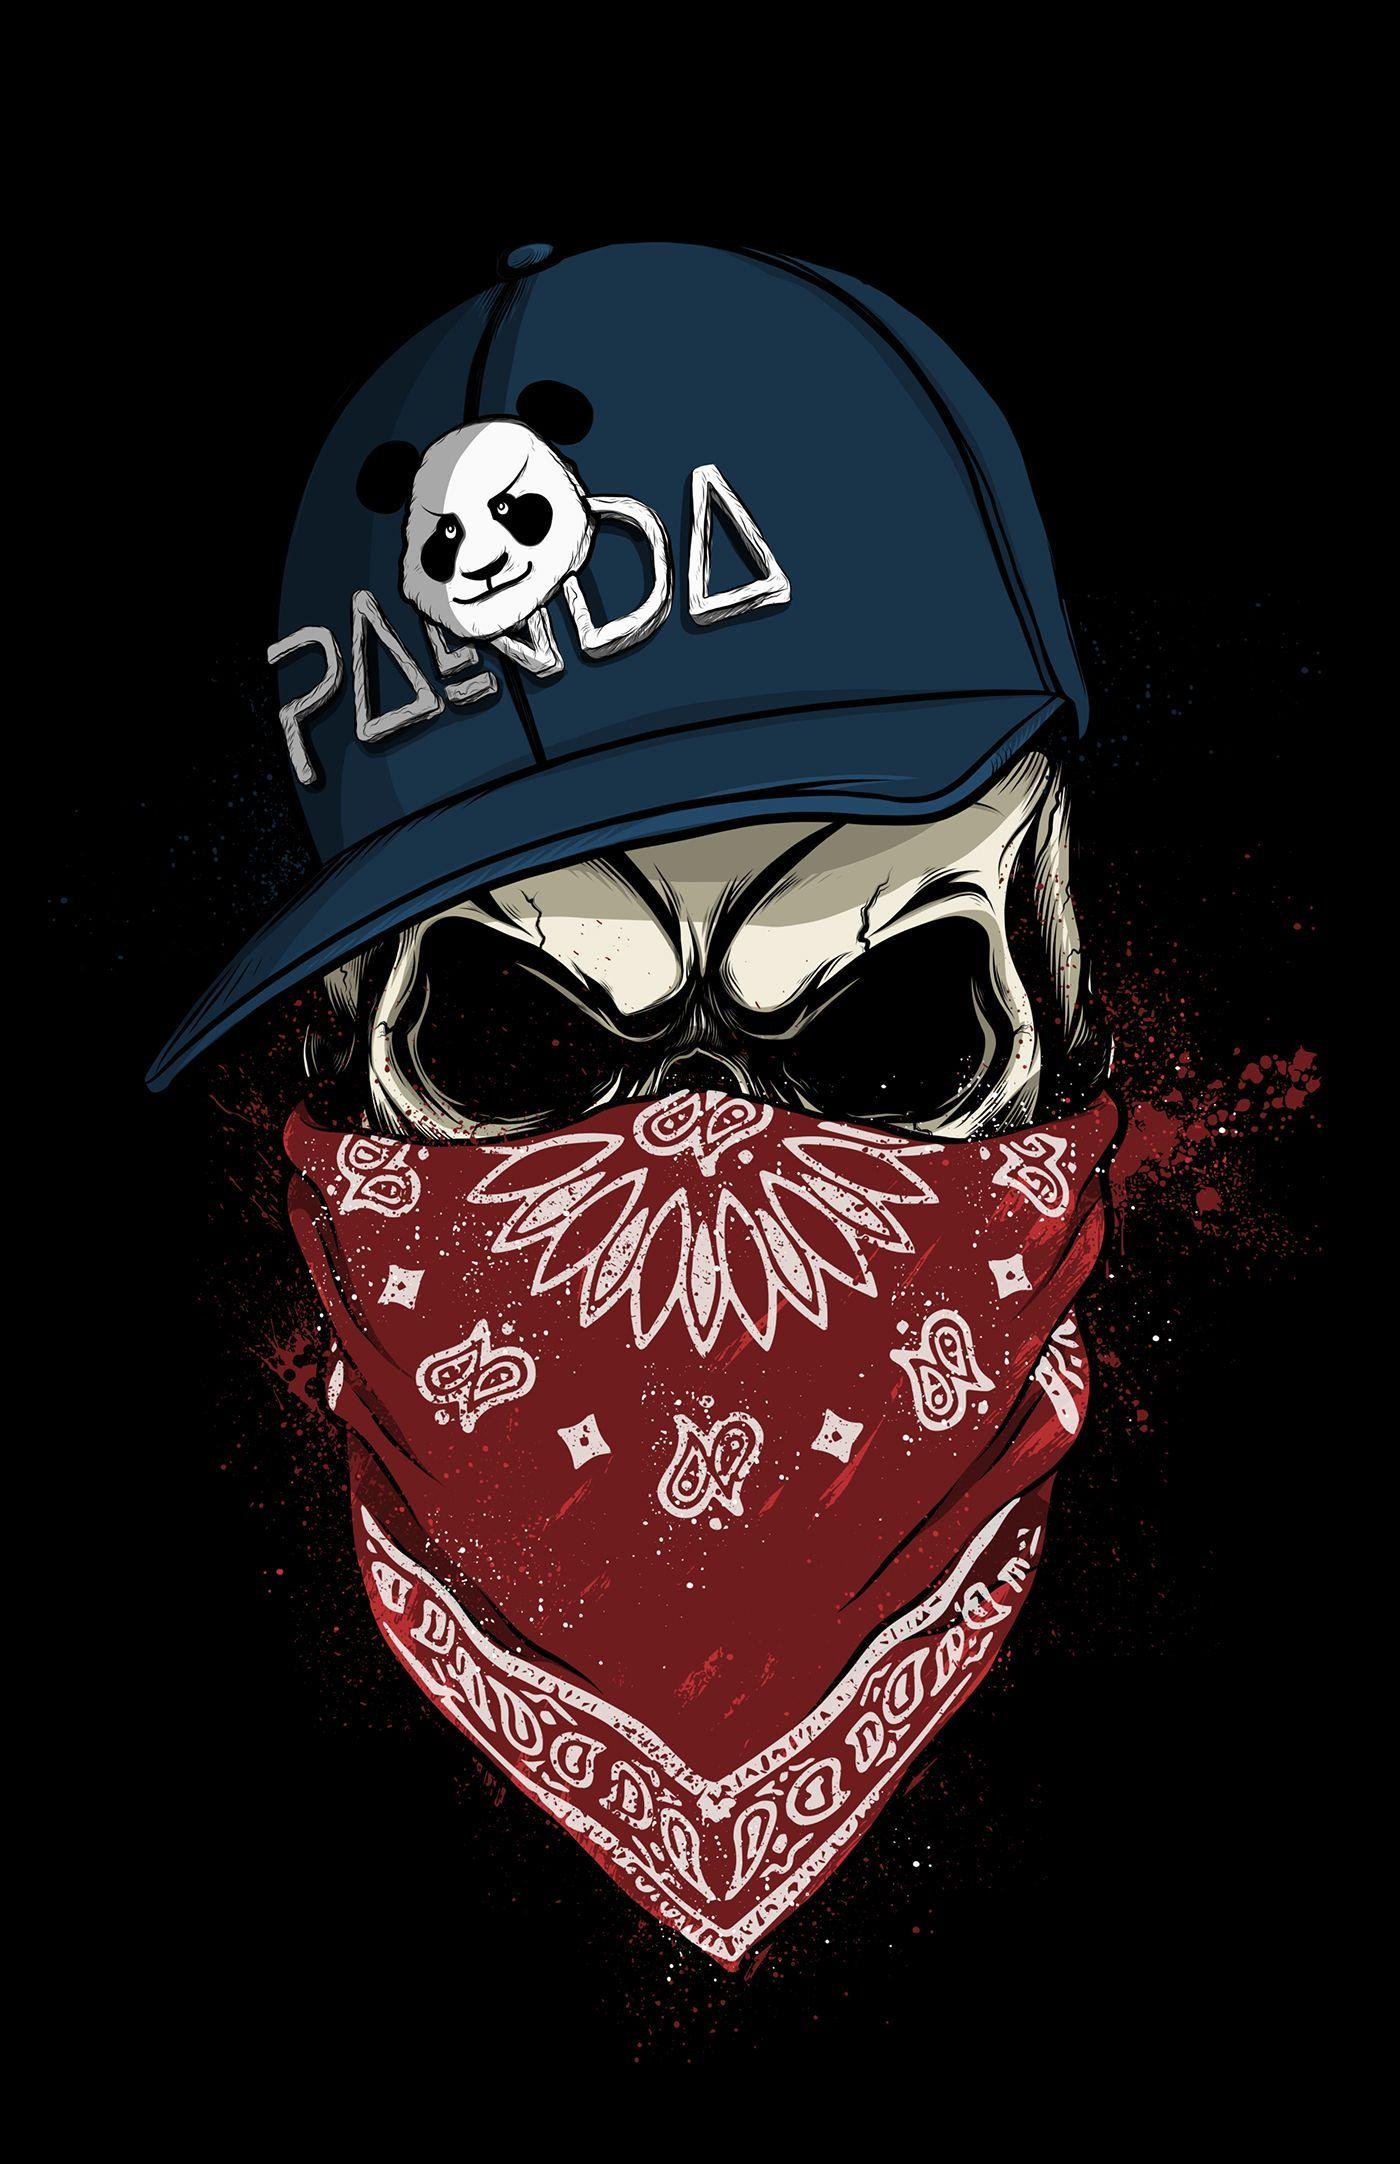 Skull_Panda. Skull wallpaper, Thug life wallpaper, Skull art